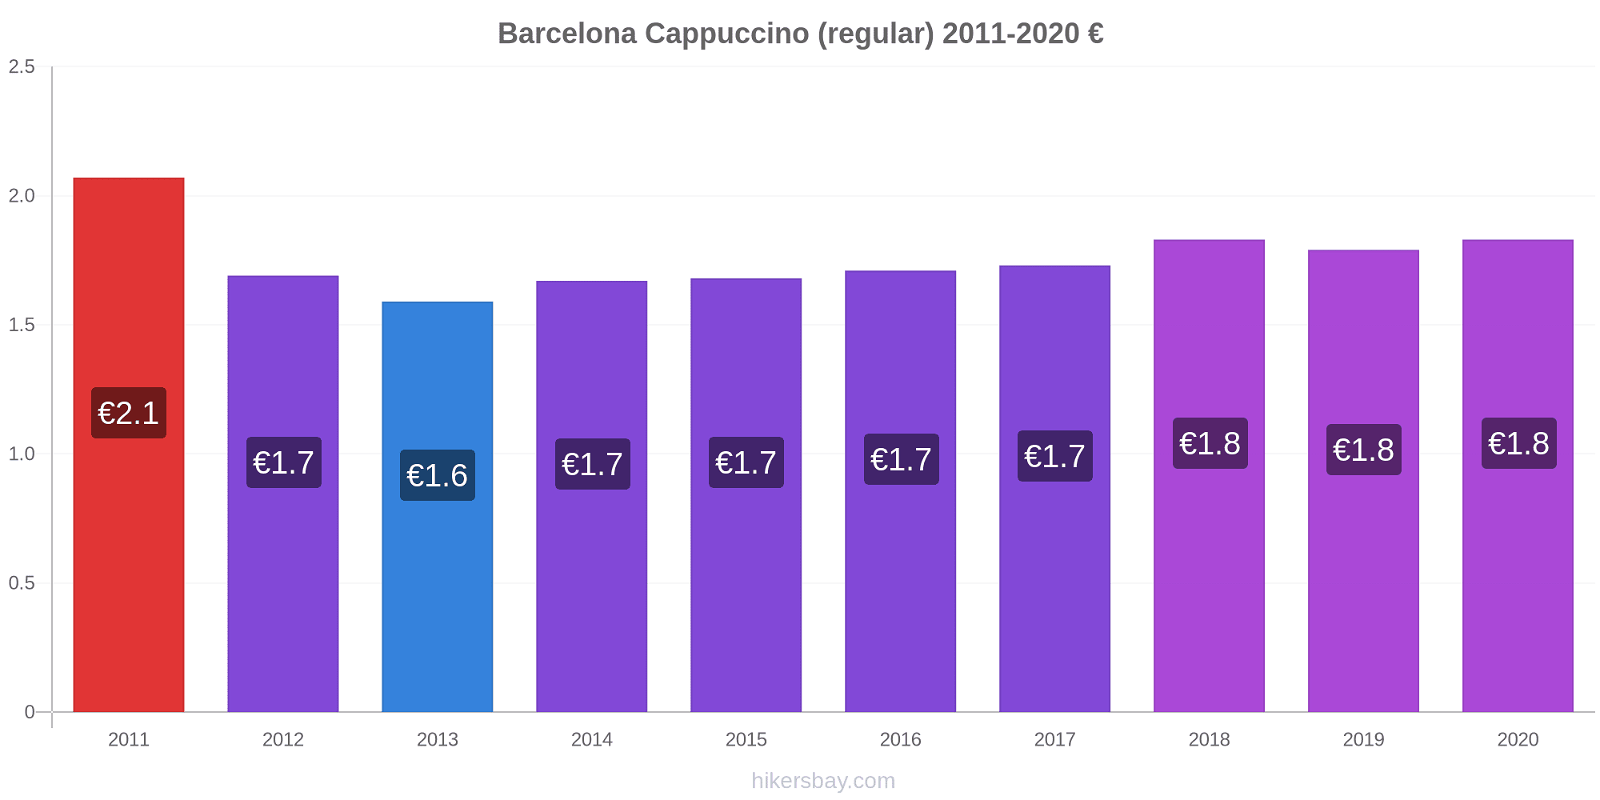 Barcelona variação de preço Capuccino (regular) hikersbay.com